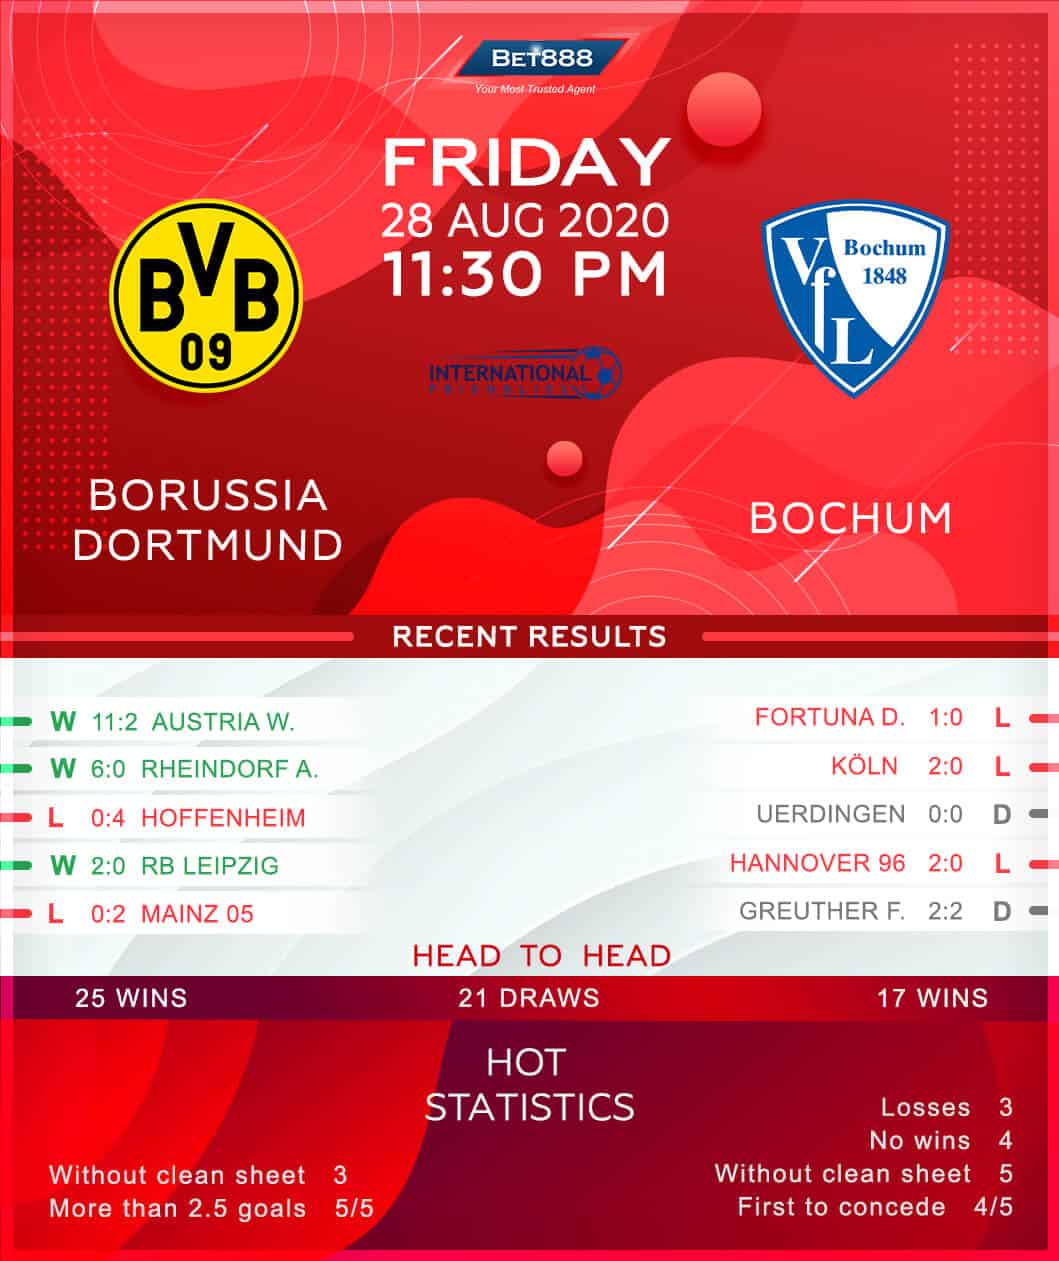 Borussia Dortmund vs Bochum 28/08/20